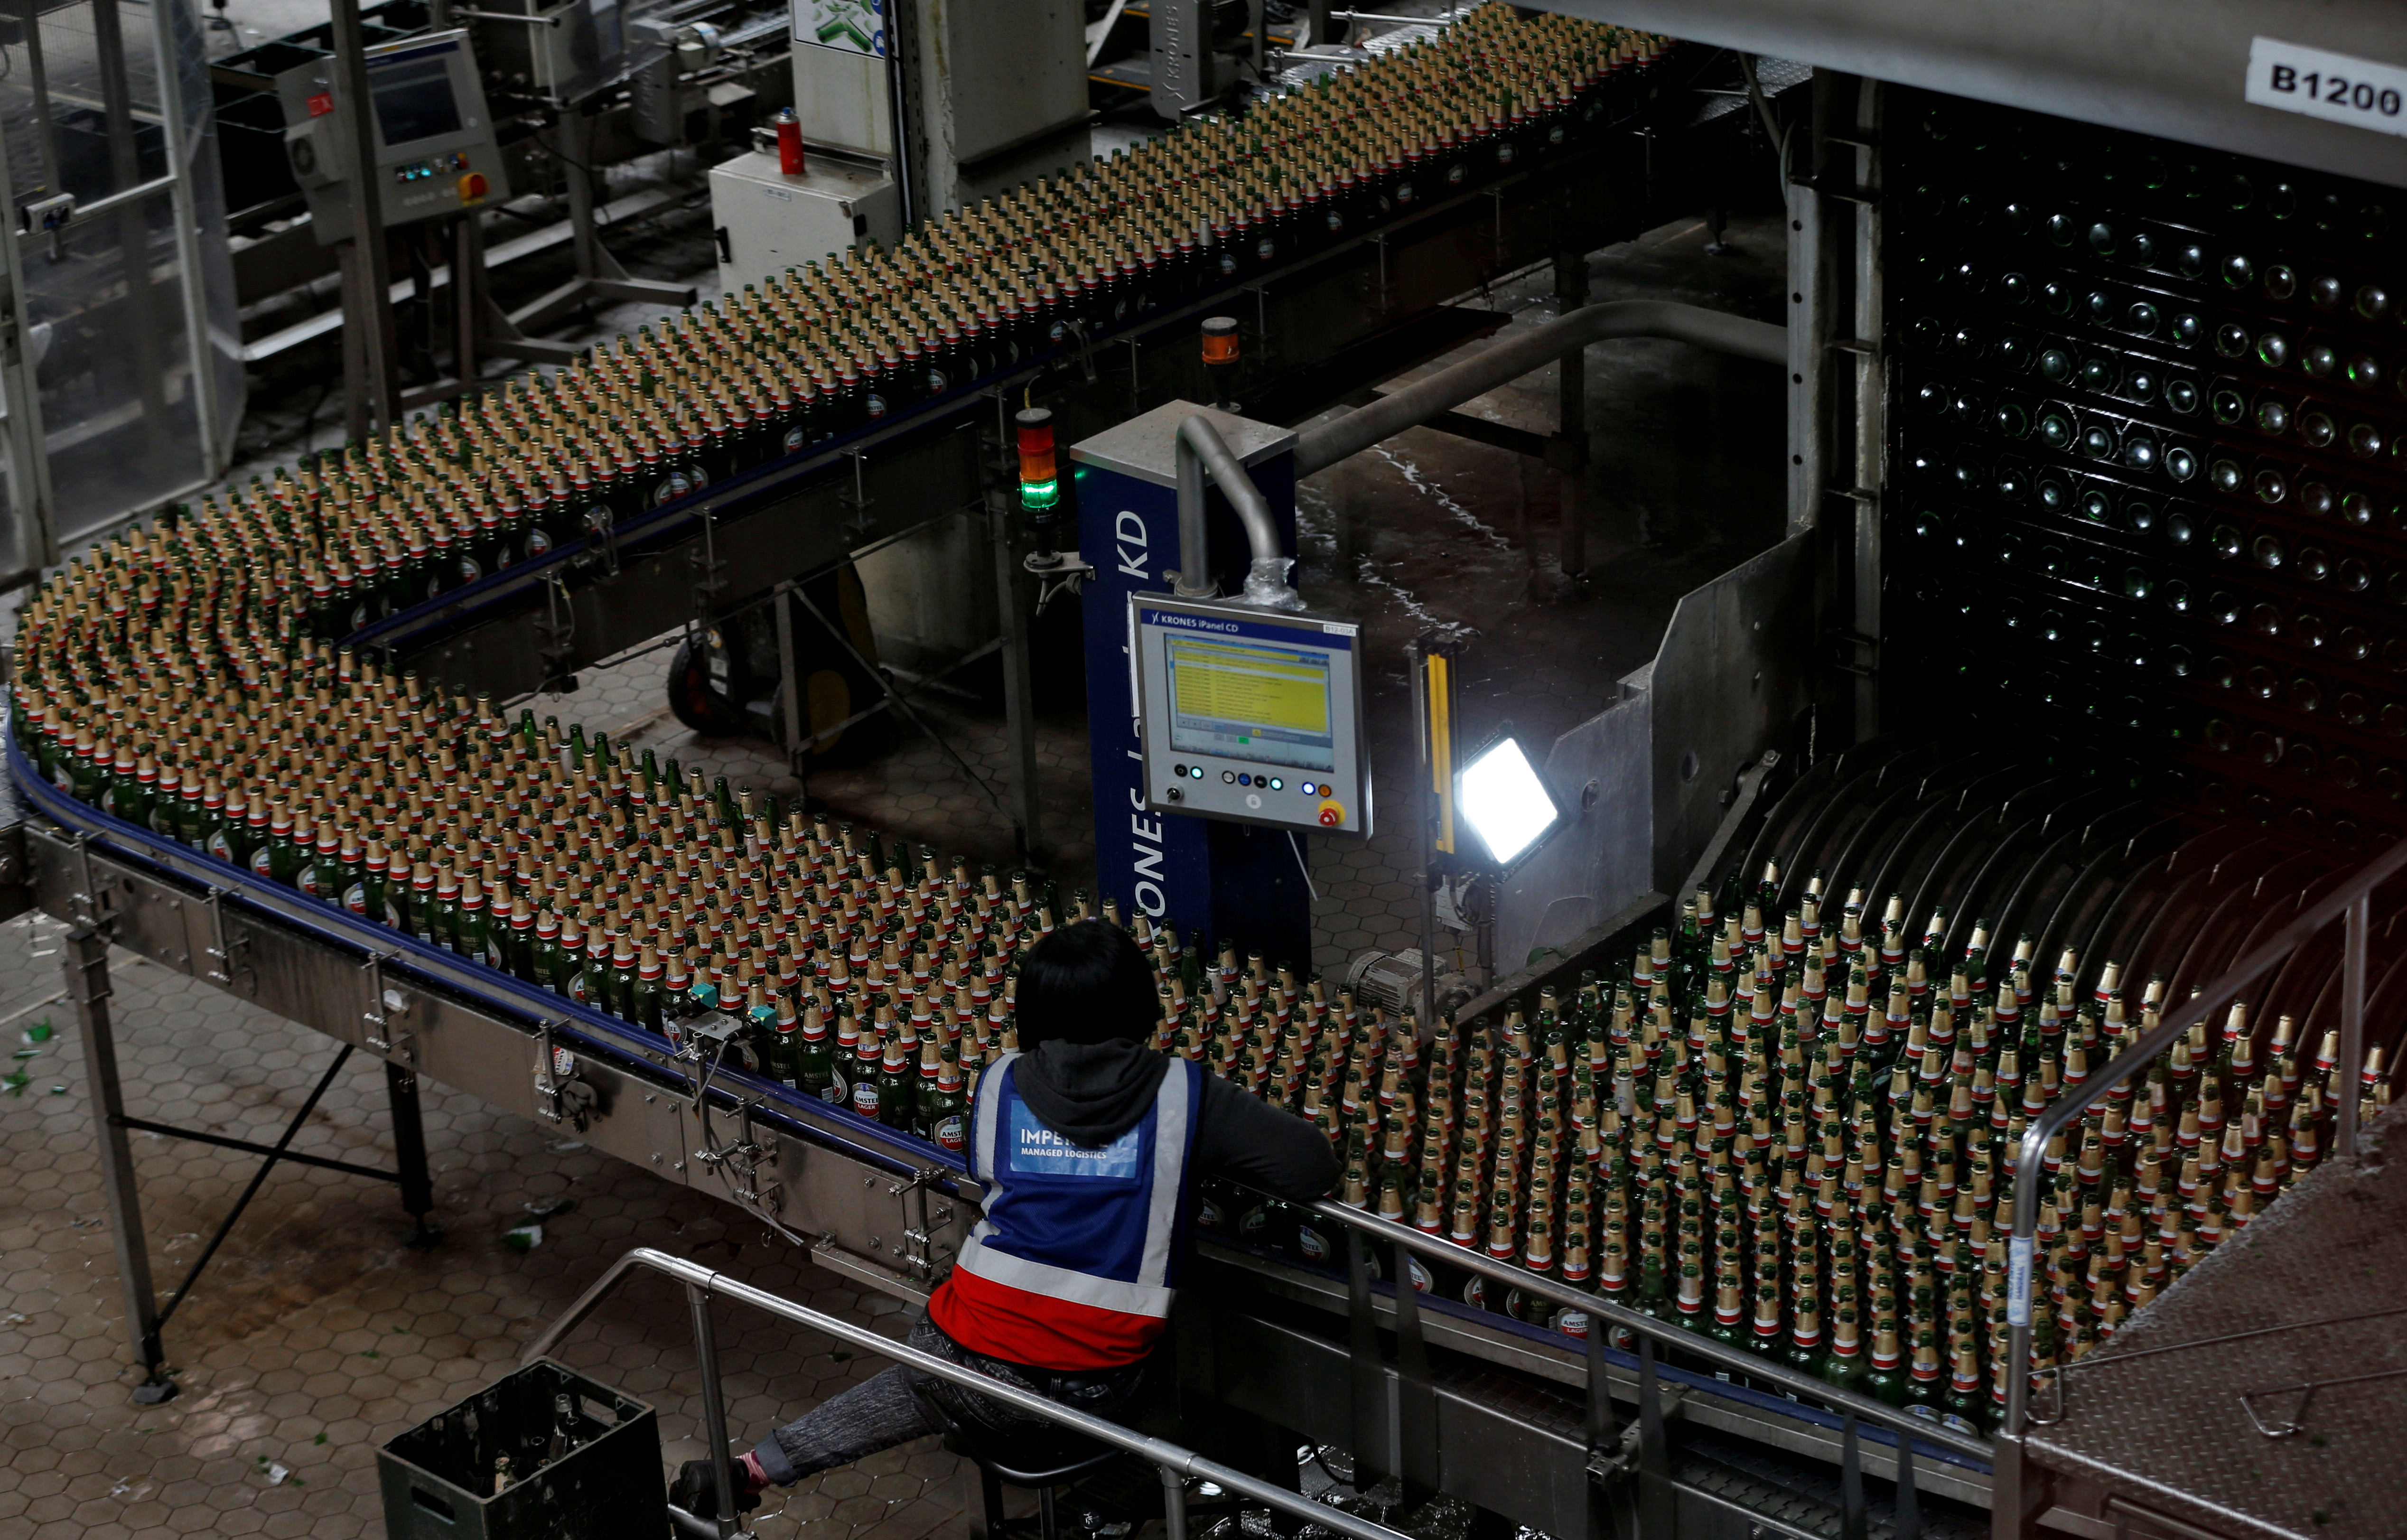 Tilkalde Forføre At interagere Ardagh to buy African bottle maker Consol for $617 mln | Reuters